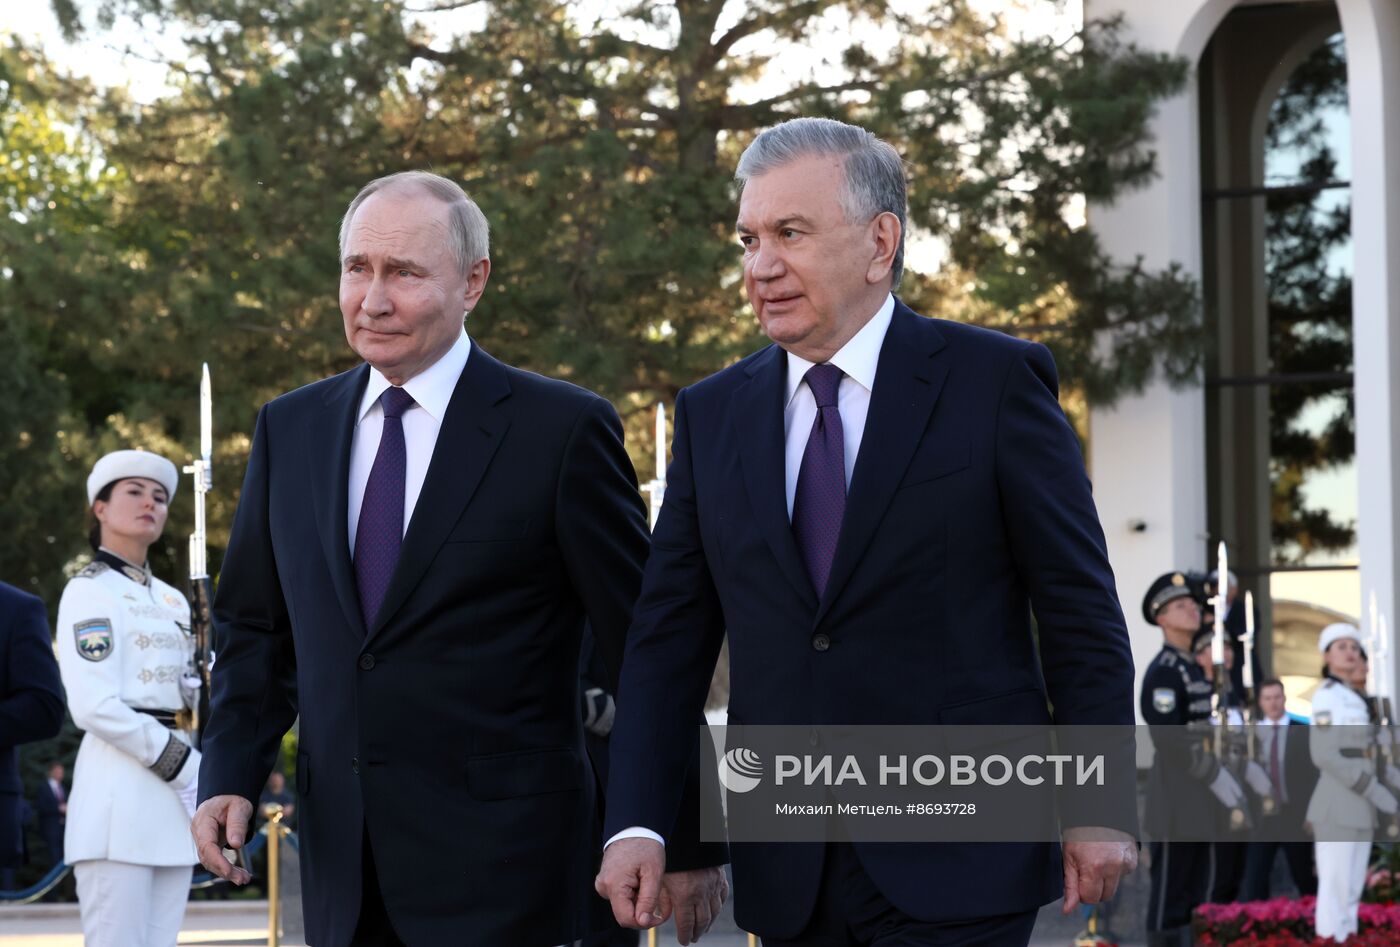 Президент Владимир Путин ответил на вопросы российских СМИ по итогам визита в Узбекистан